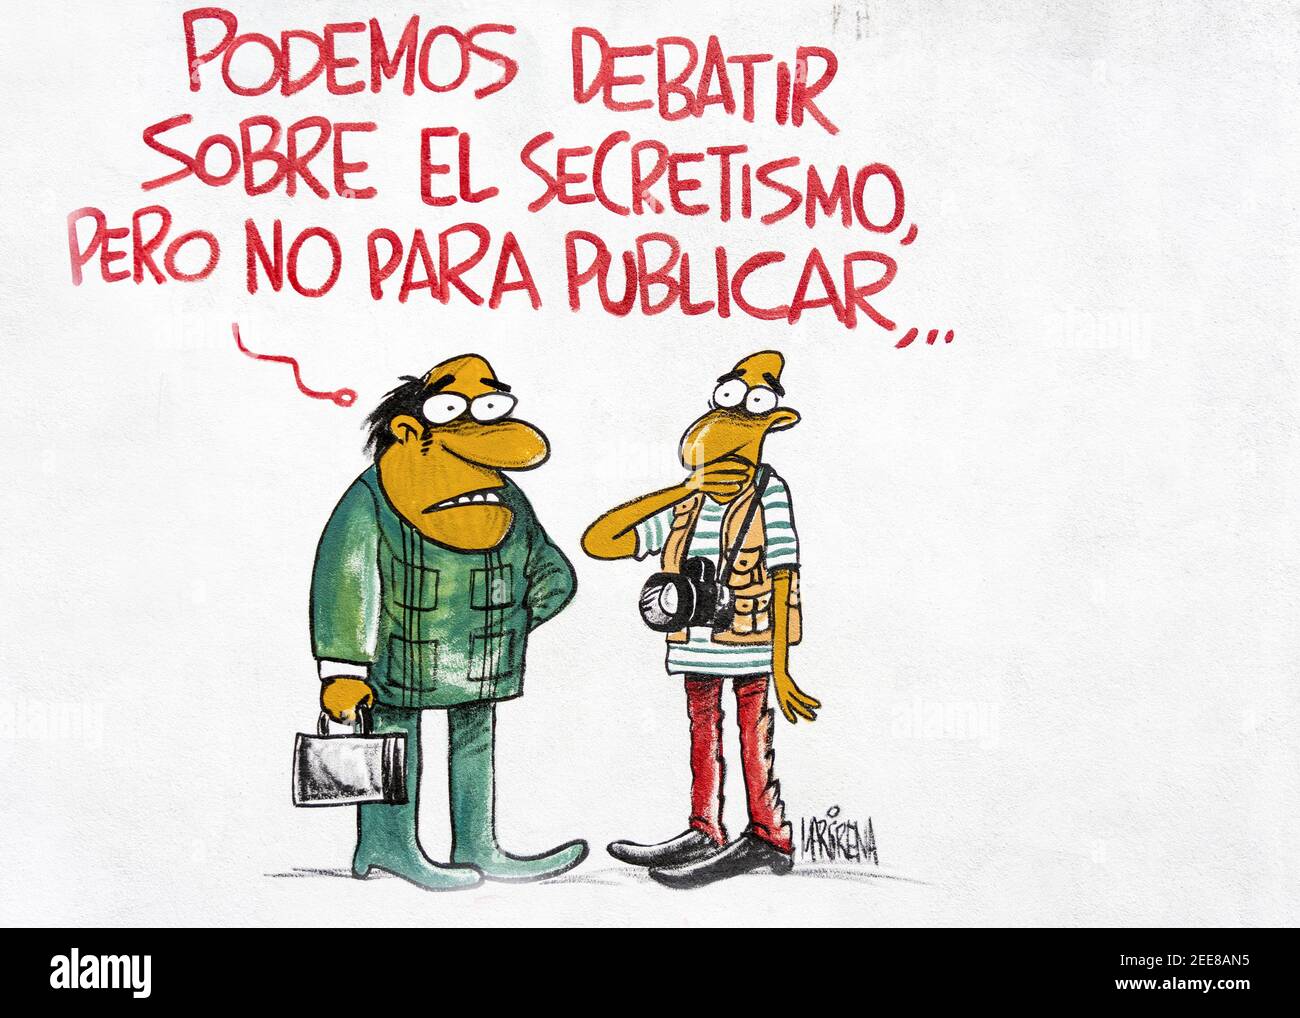 Offizielle Humor auf der Melaito Cartoon Zeitung Wand nach gemalt Der Raul Castro reformiert die Botschaft ist offener und Kritiker der sozialistischen Gesellschaft Stockfoto